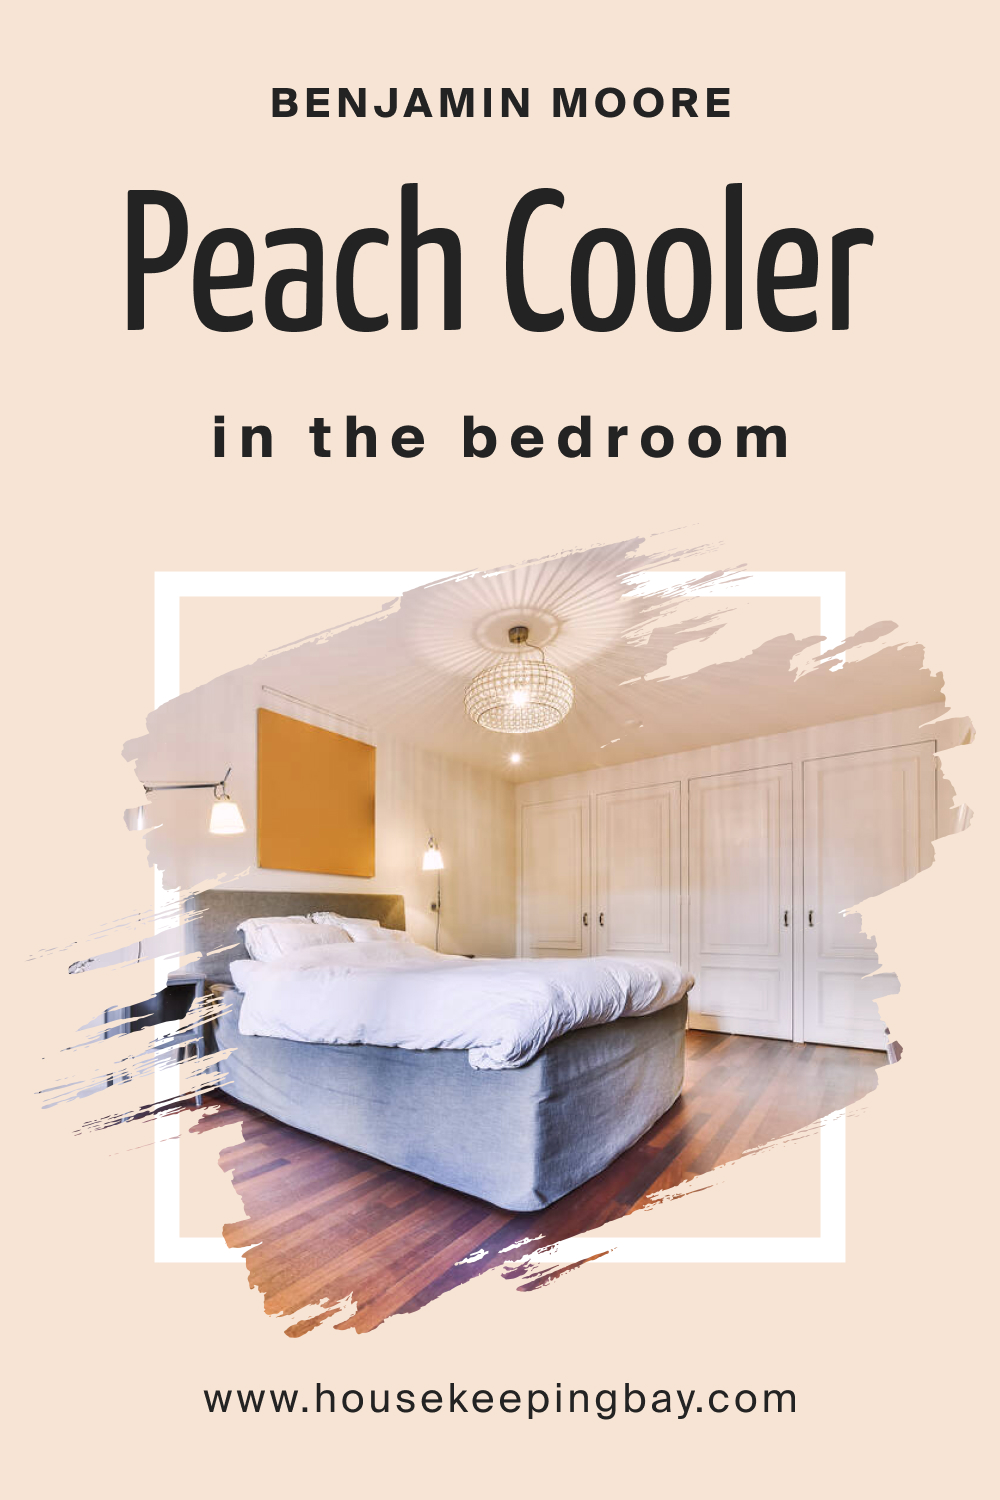 Benjamin Moore. Peach Cooler 022 for the Bedroom